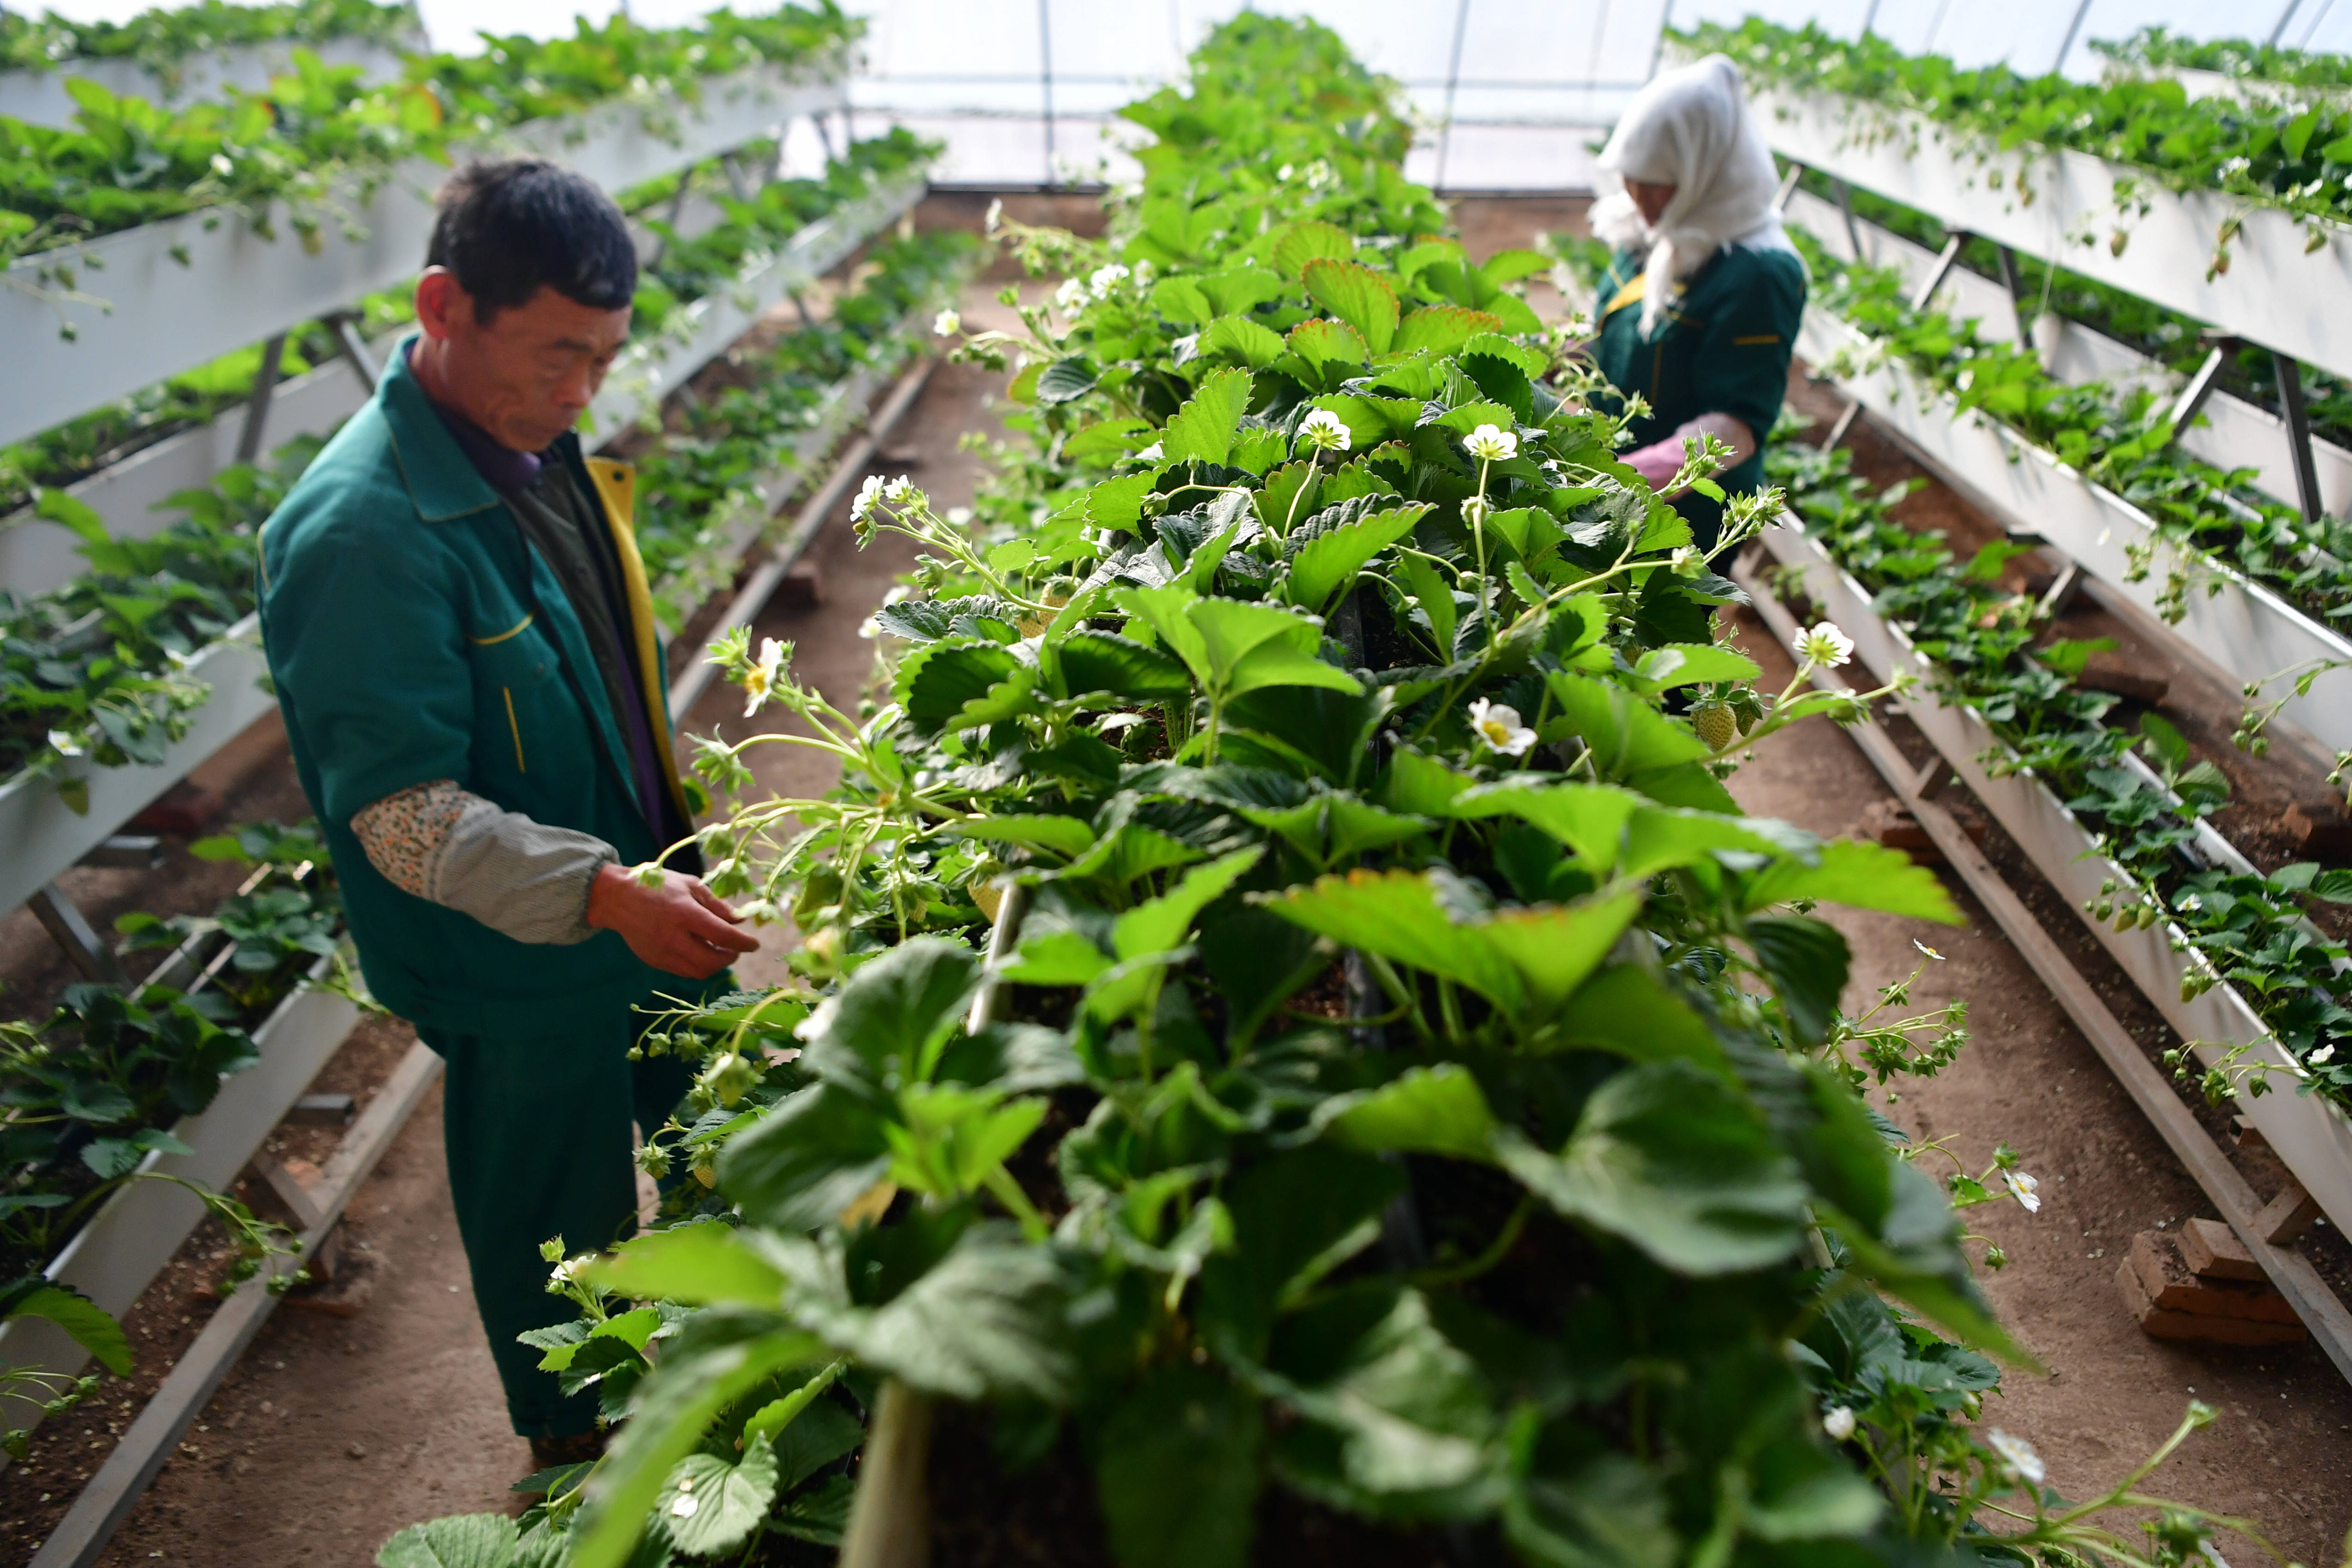 12月8日,工人在兰州新区现代农业示范园内查看草莓生长情况.